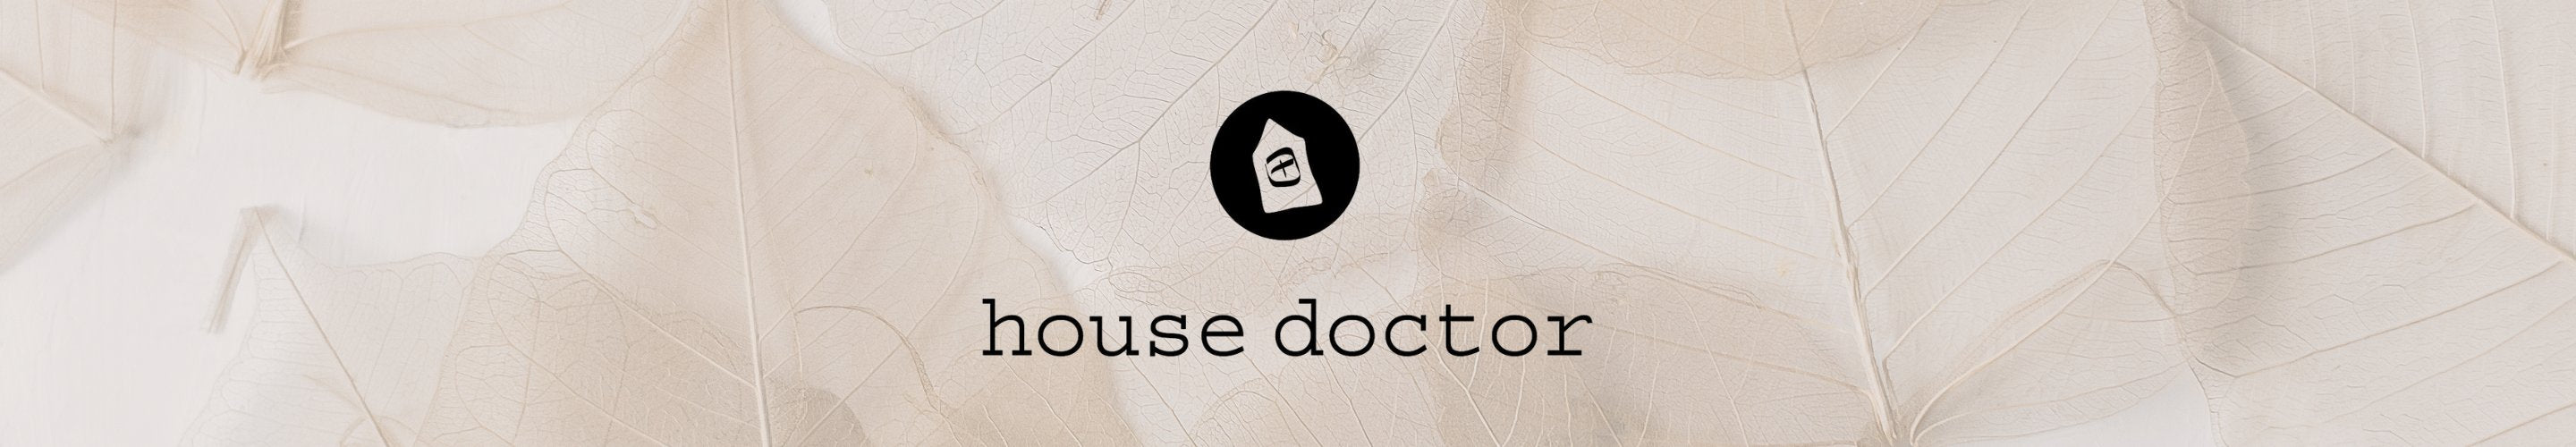 House Doctor banner med logo